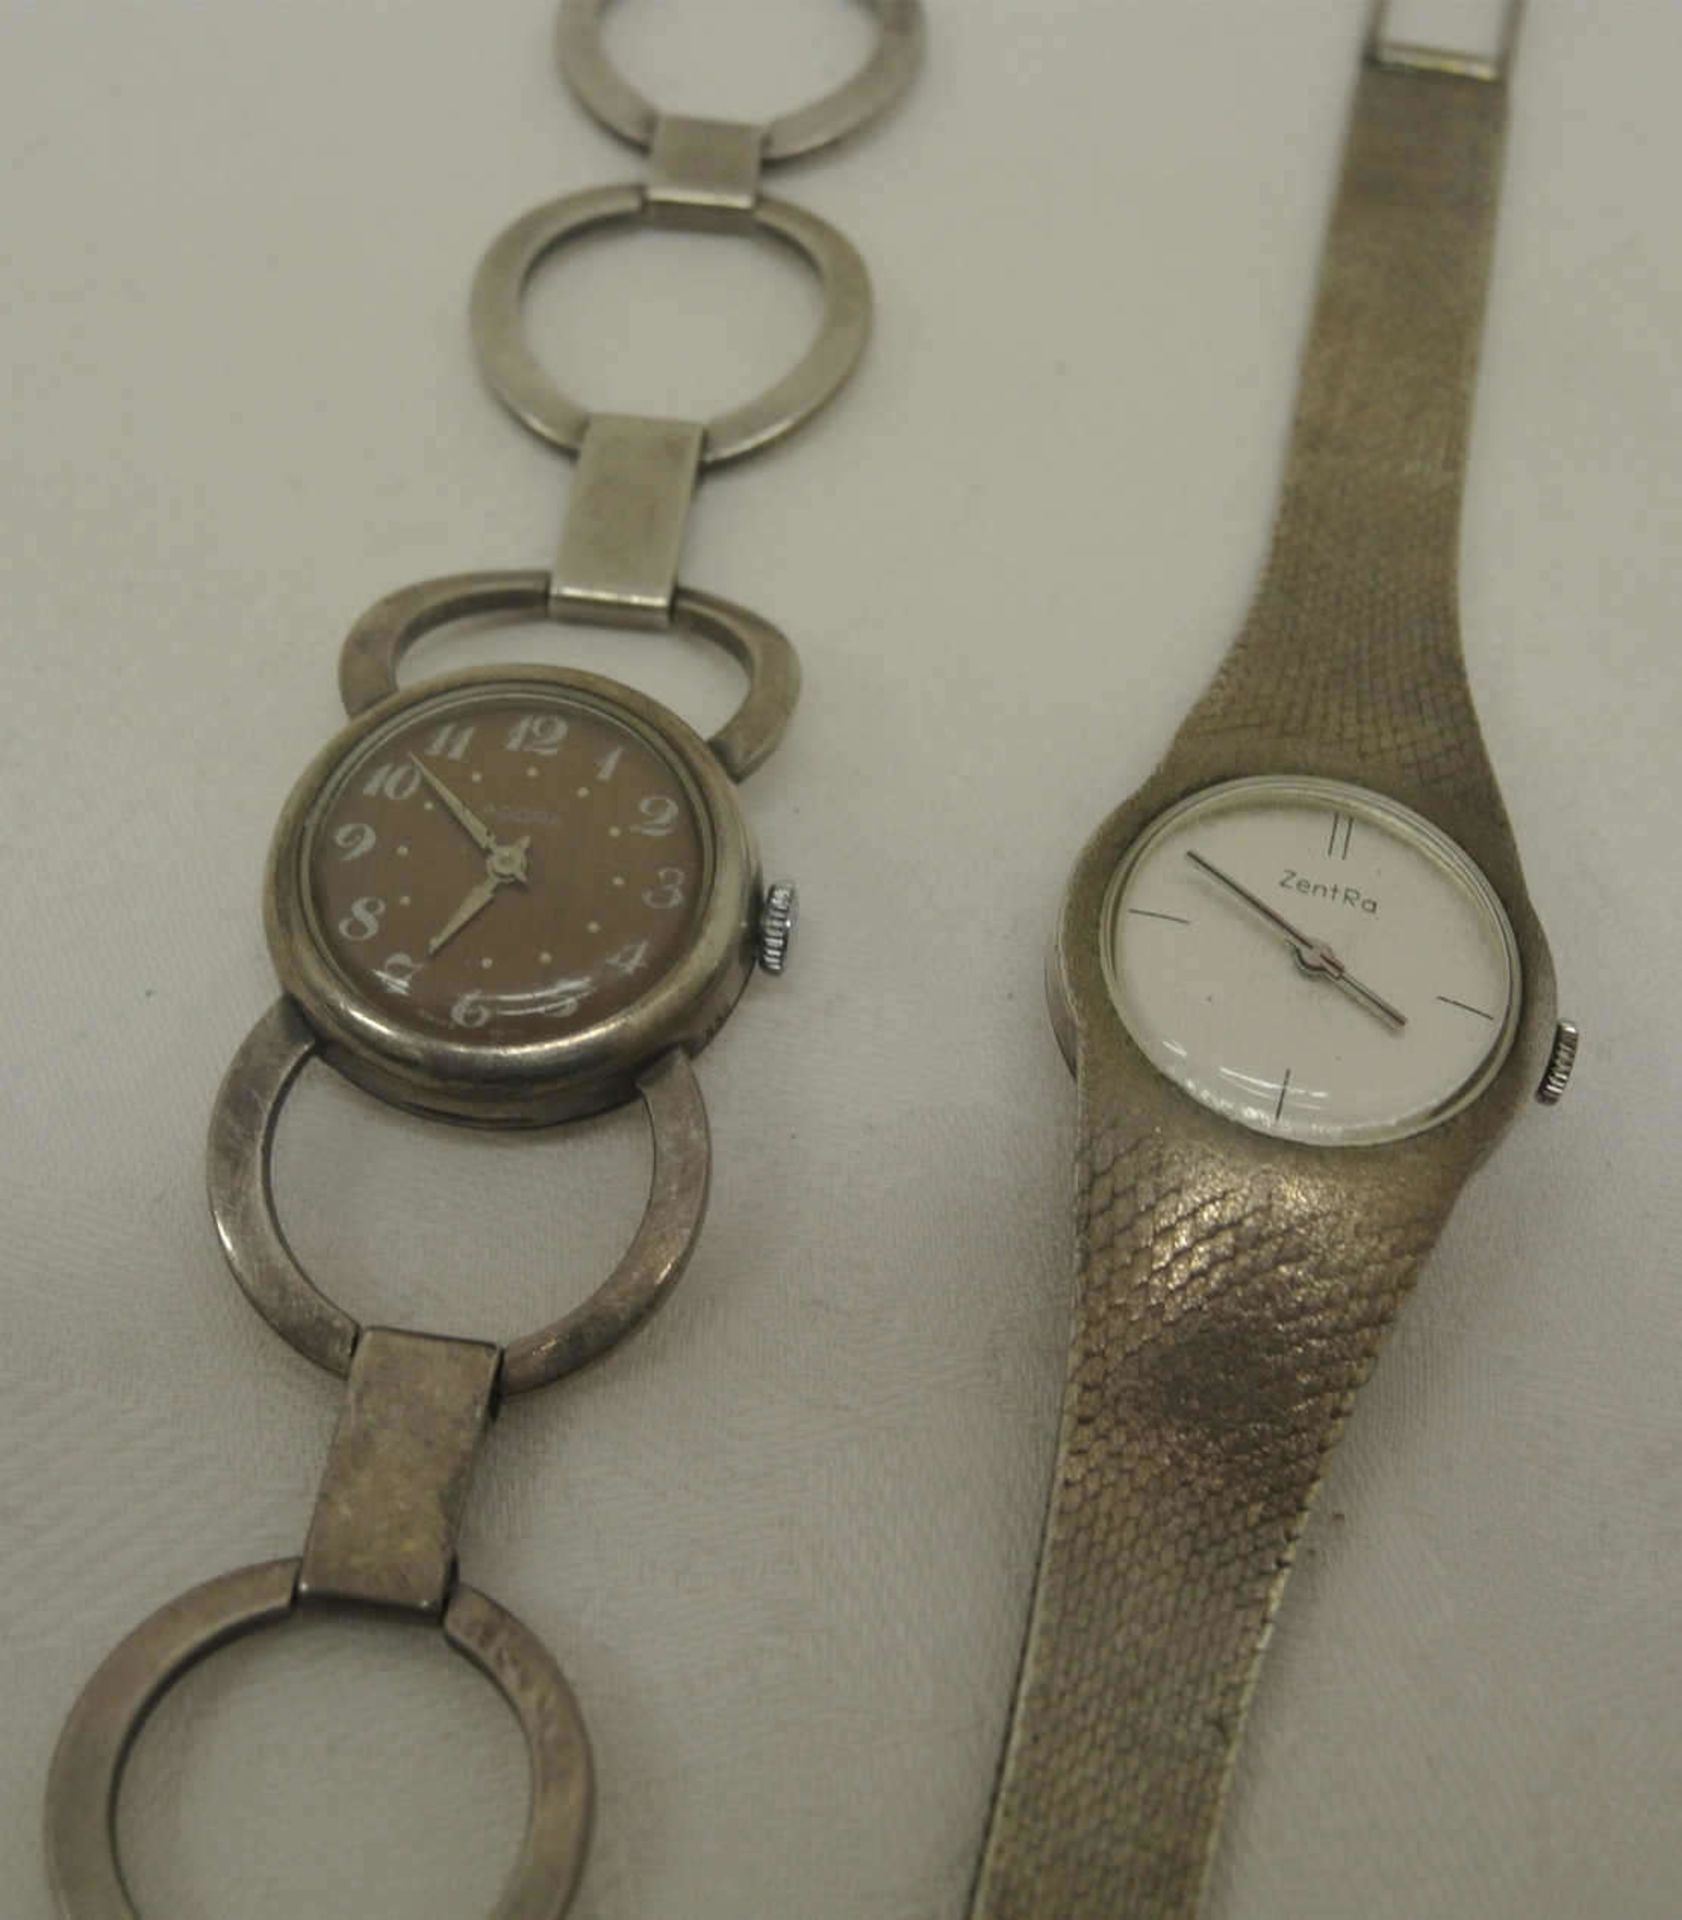 2 Damenarmbanduhren, 1x ZentRa, 835er Silber, mechanische, sowie 1x Adora, mechanisch. Beide Uhren - Bild 2 aus 2